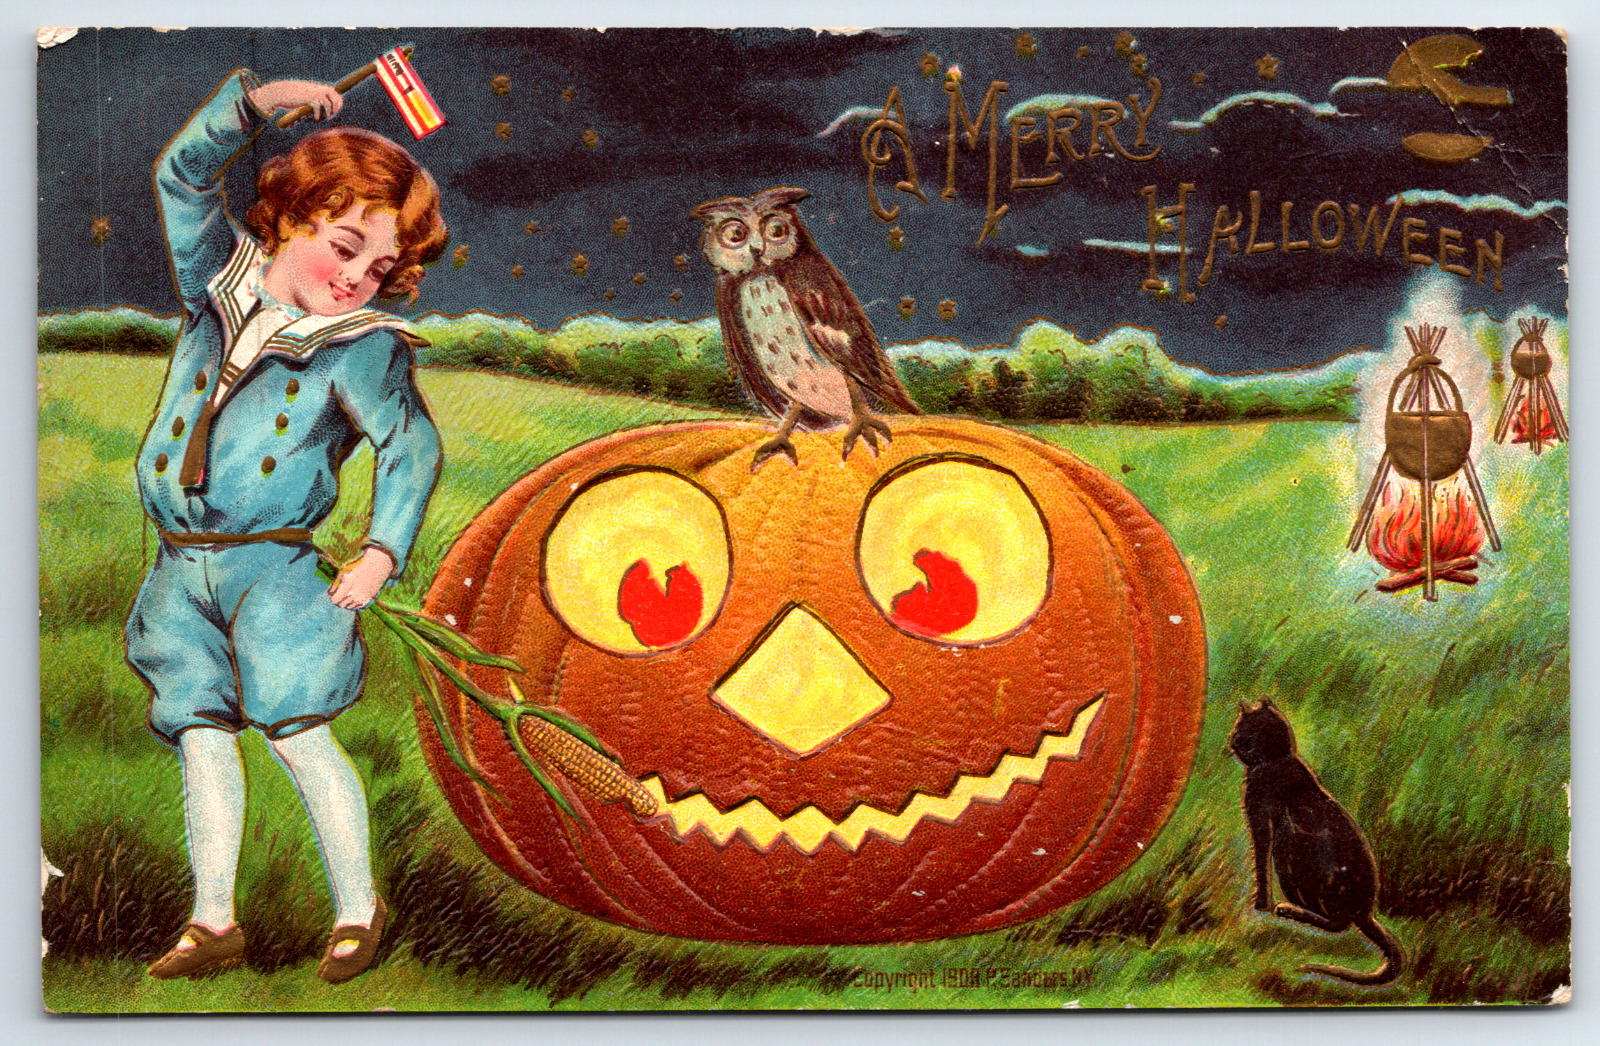 A Merry Halloween Vintage Postcard